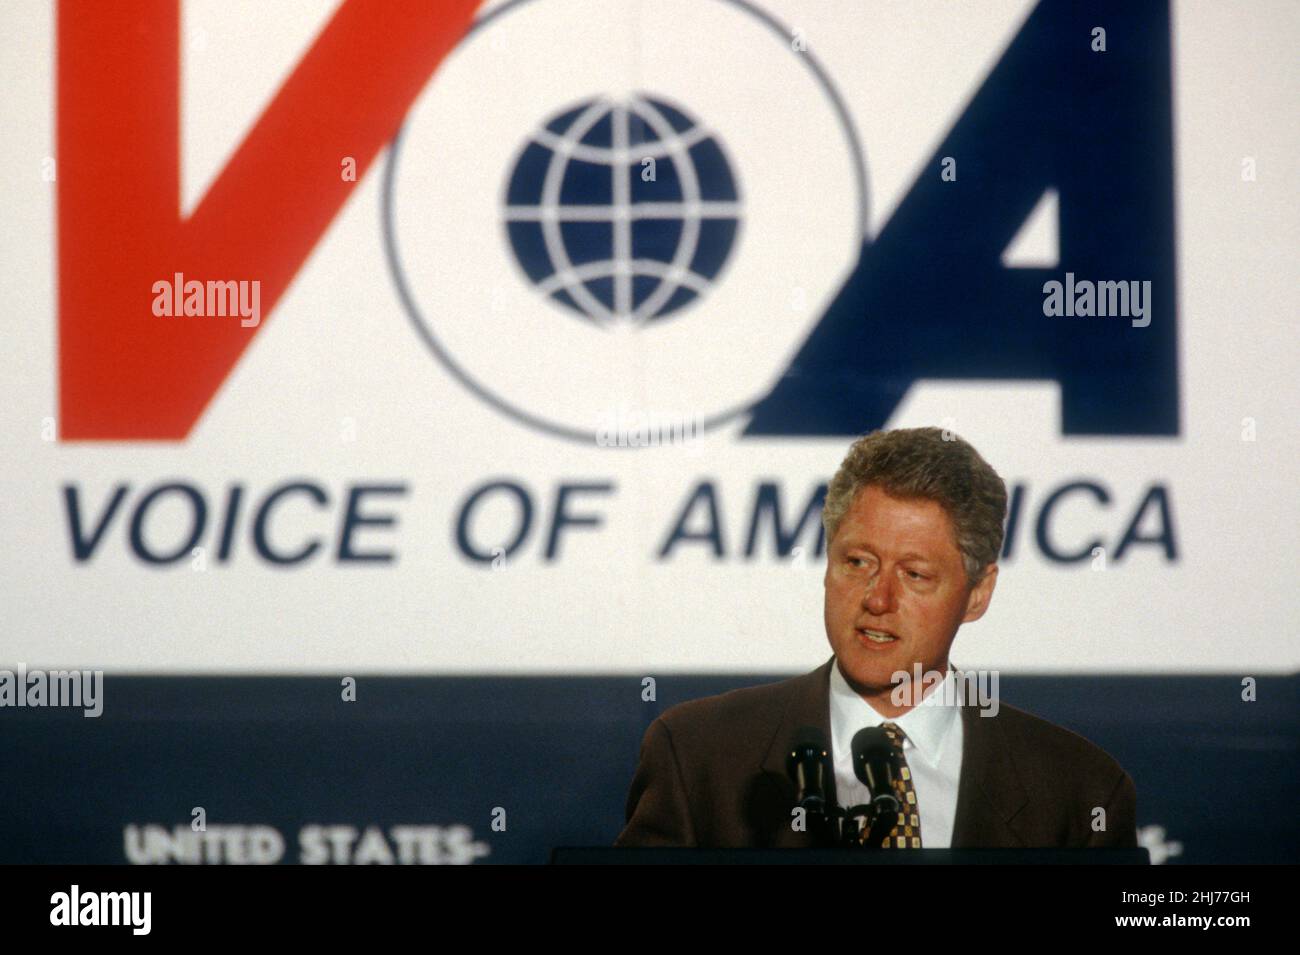 US-Präsident Bill Clinton hält am 24. Oktober 1997 in Washington, D.C. eine außenpolitische Rede zu China und den nationalen Interessen vor dem Hauptquartier der Voice of America. Clinton verteidigte seinen Drücker für bessere Beziehungen zu China. Stockfoto